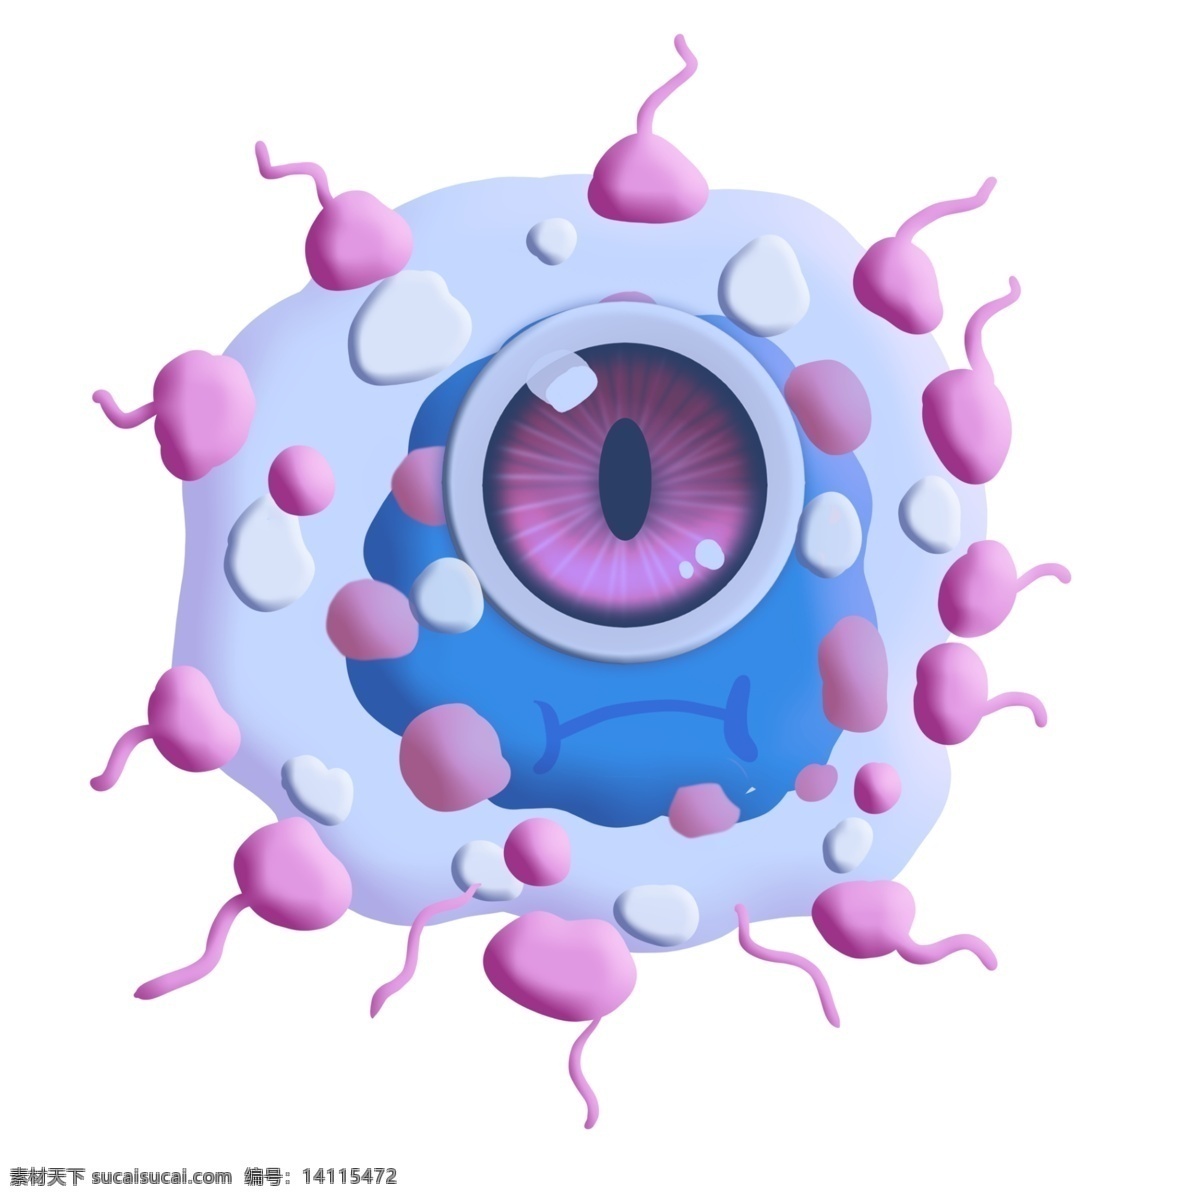 蓝色 泡泡 嘟 嘴 细菌 卡通 独眼 赌气 斑点 大眼睛 圆点 串连 杆菌 病毒 医学 生物 疾病 生病 菌体 菌状 细胞